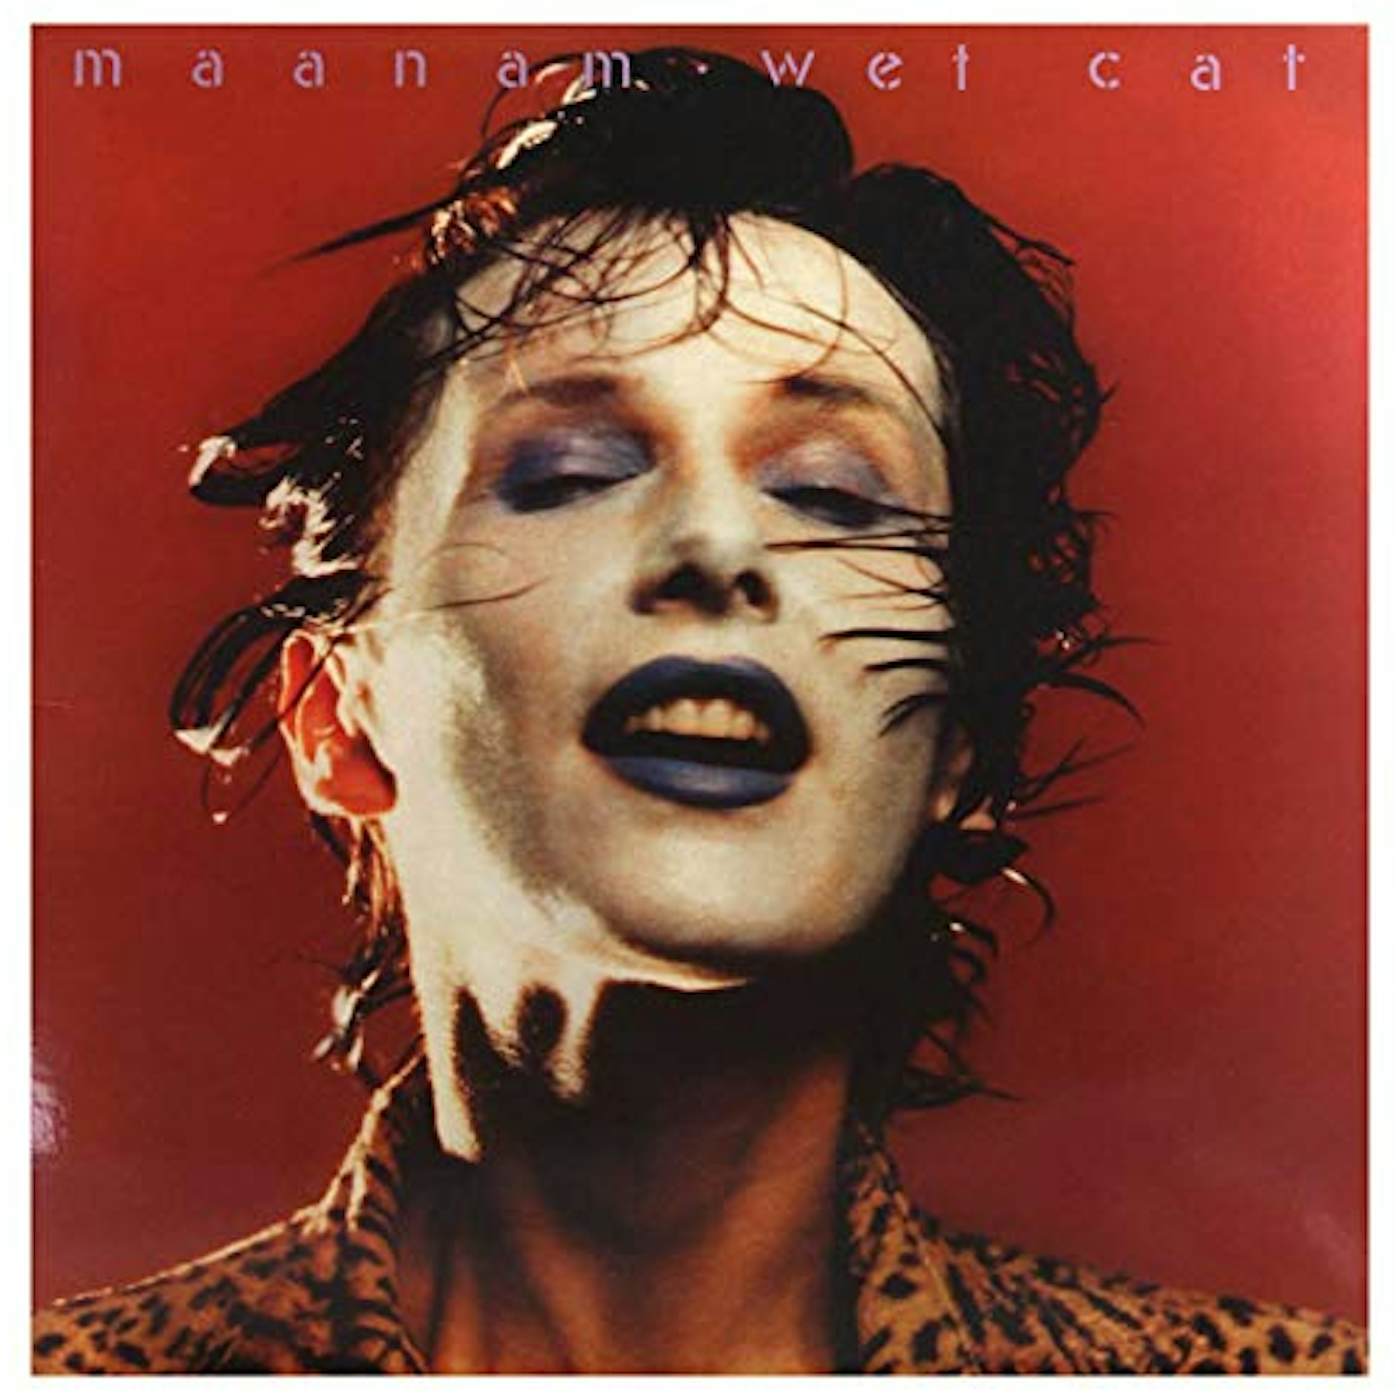 Maanam Wet Cat Vinyl Record